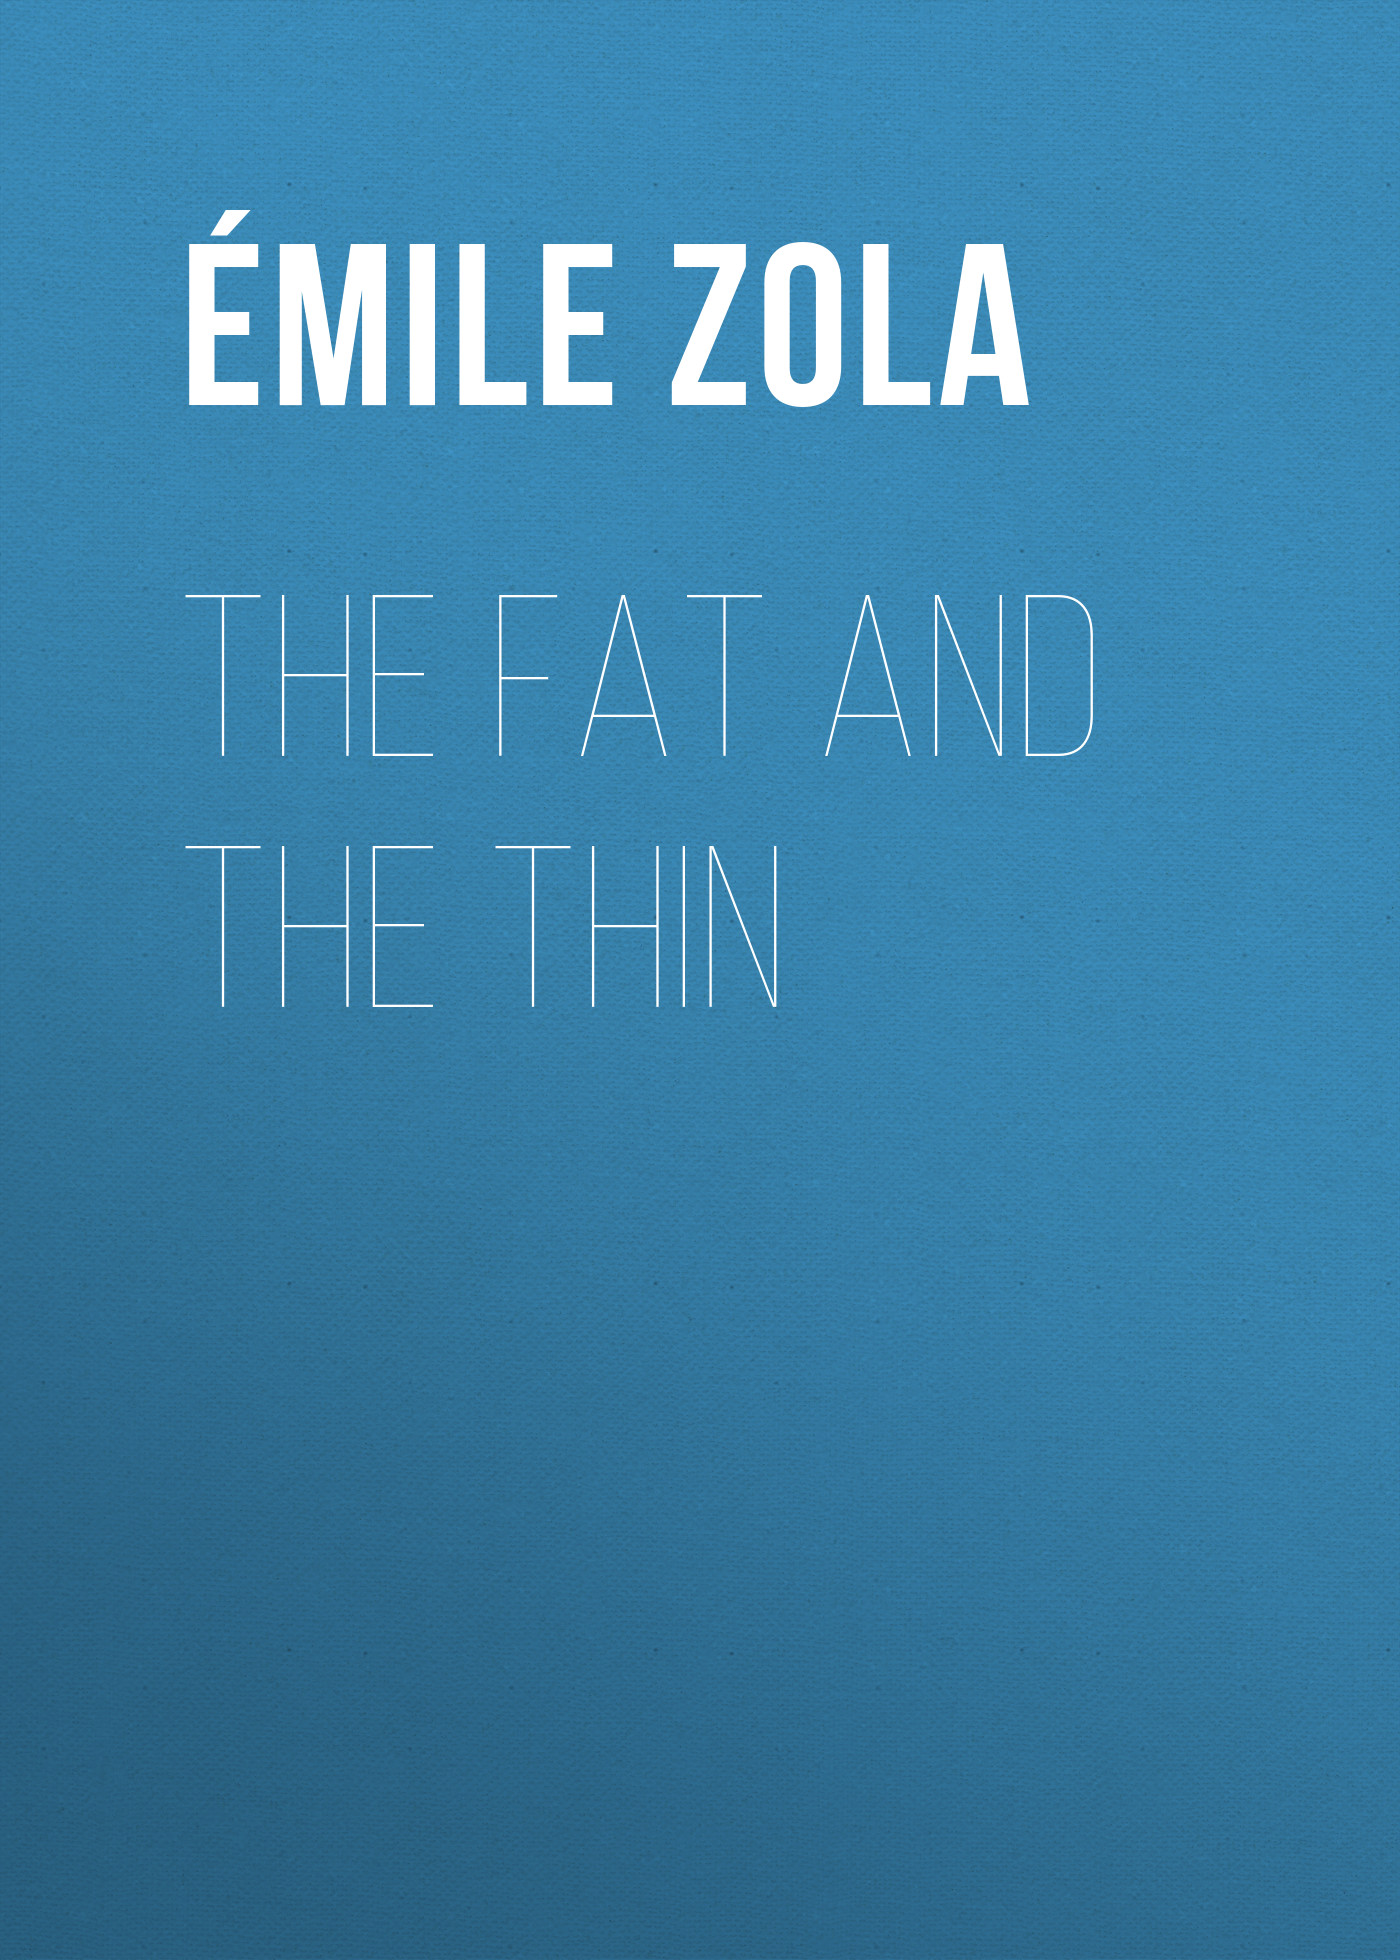 Книга The Fat and the Thin из серии , созданная Émile Zola, может относится к жанру Литература 19 века, Зарубежная старинная литература, Зарубежная классика. Стоимость электронной книги The Fat and the Thin с идентификатором 25559852 составляет 0 руб.